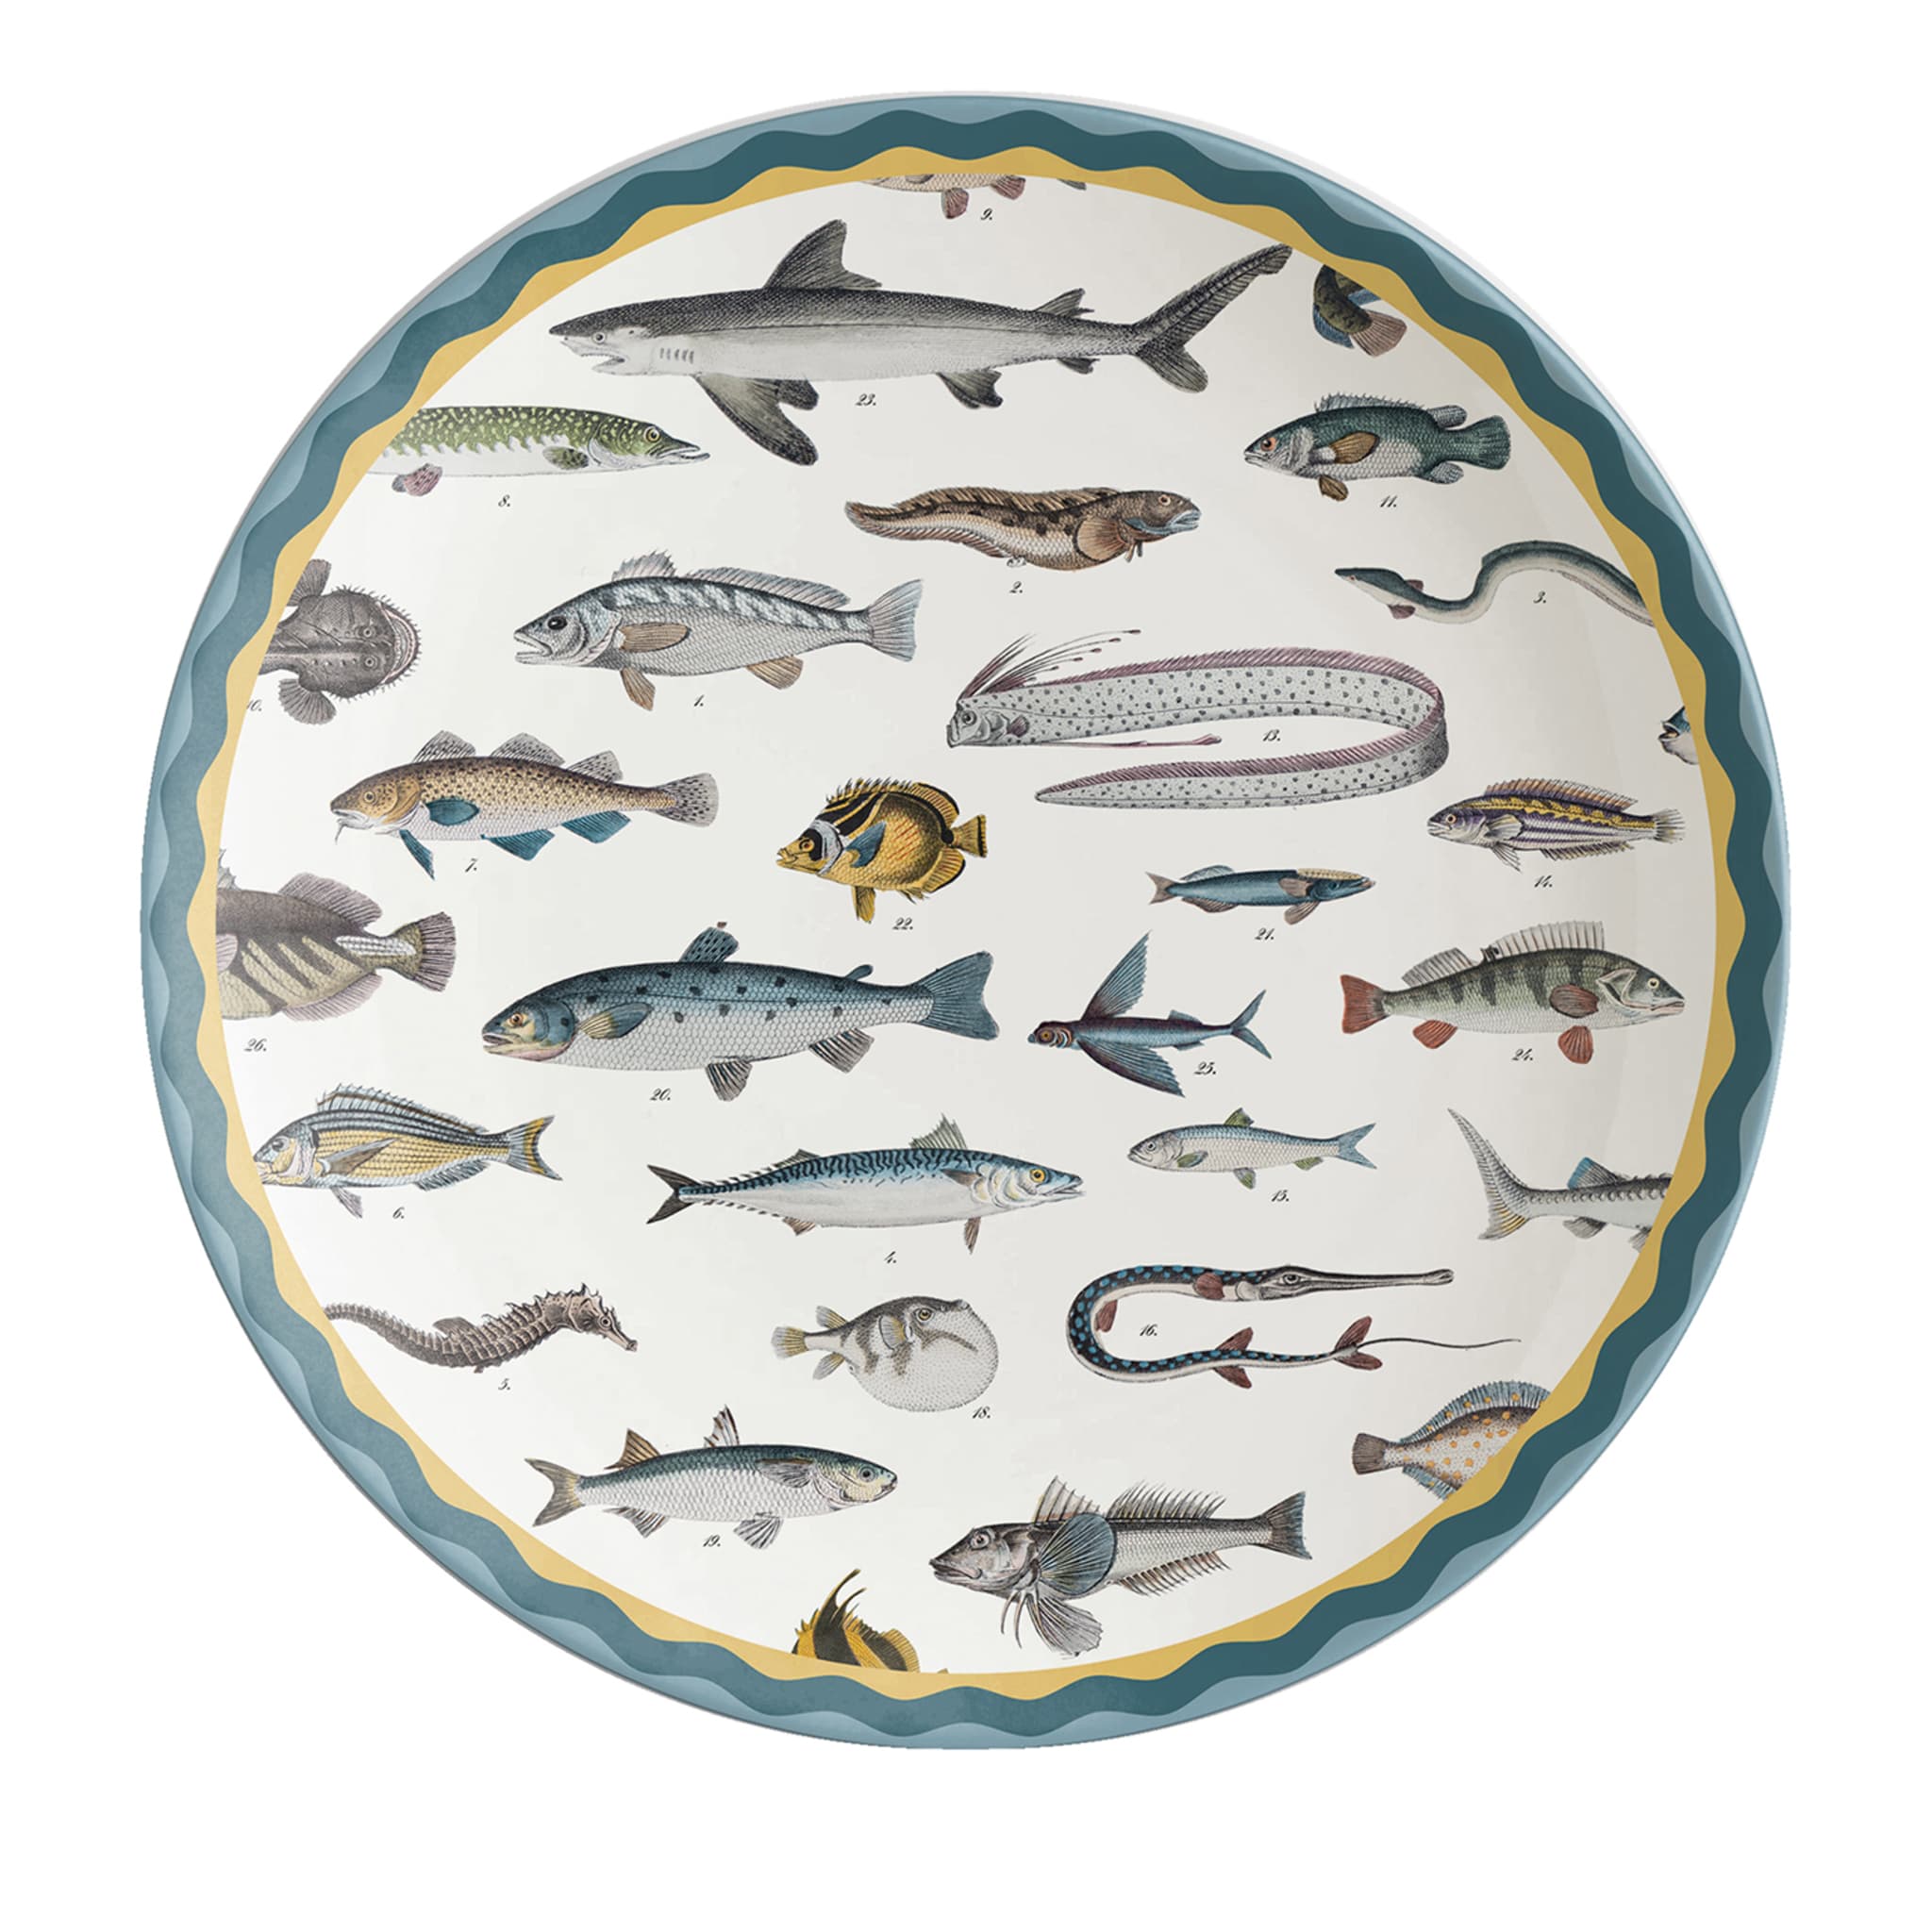 Cabinet De Curiosités Porcelain Charger Plate With Fishes - Main view